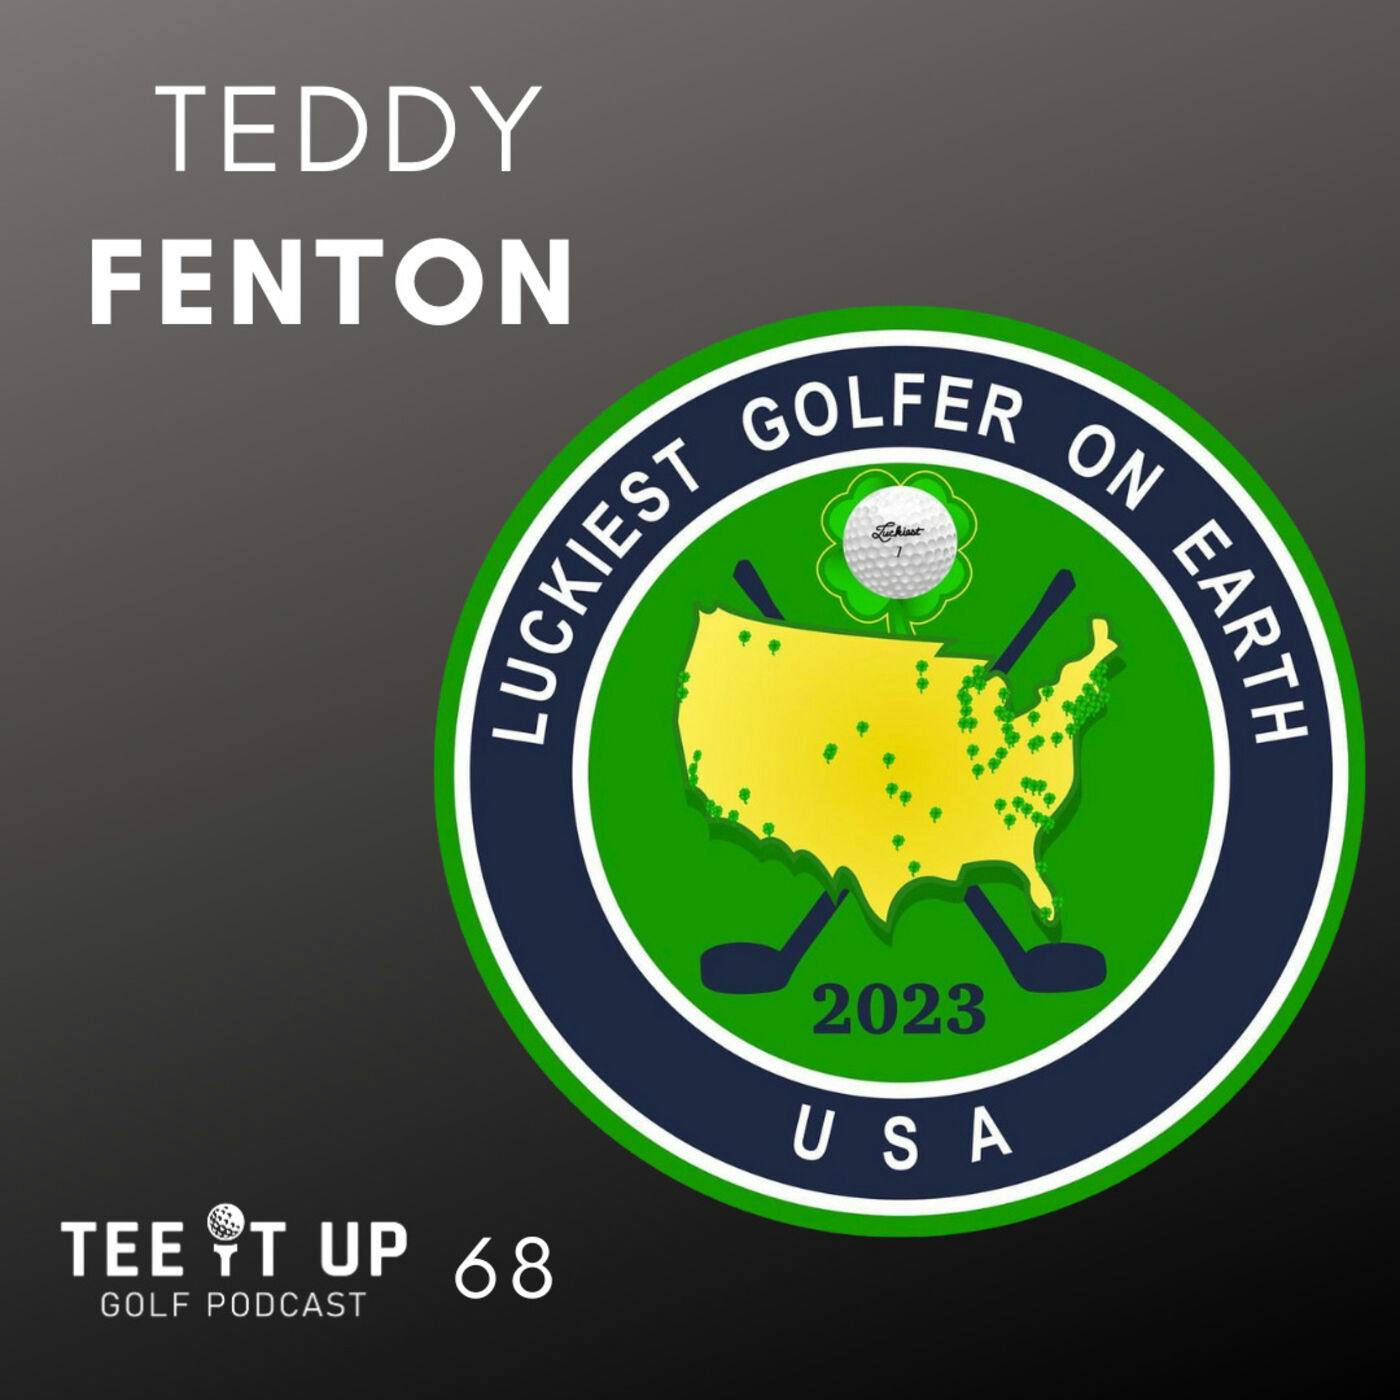 Teddy Fenton - Luckiest Golfer On Earth